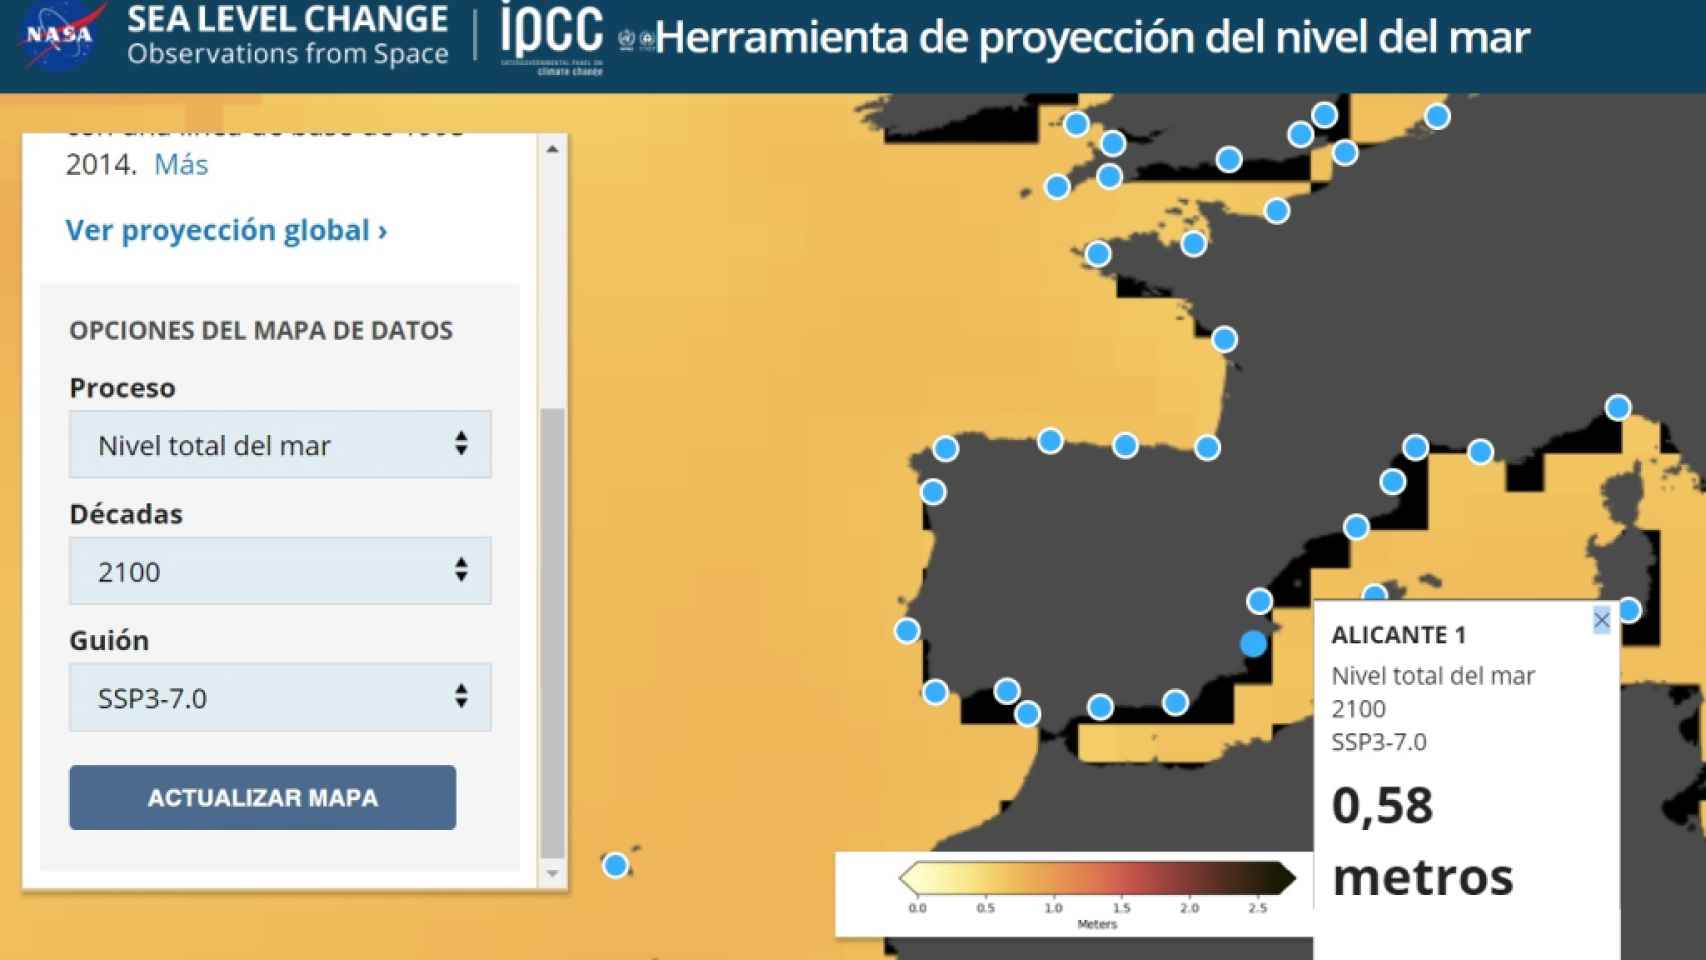 Aumento del nivel del mar en Alicante según la web de la NASA.